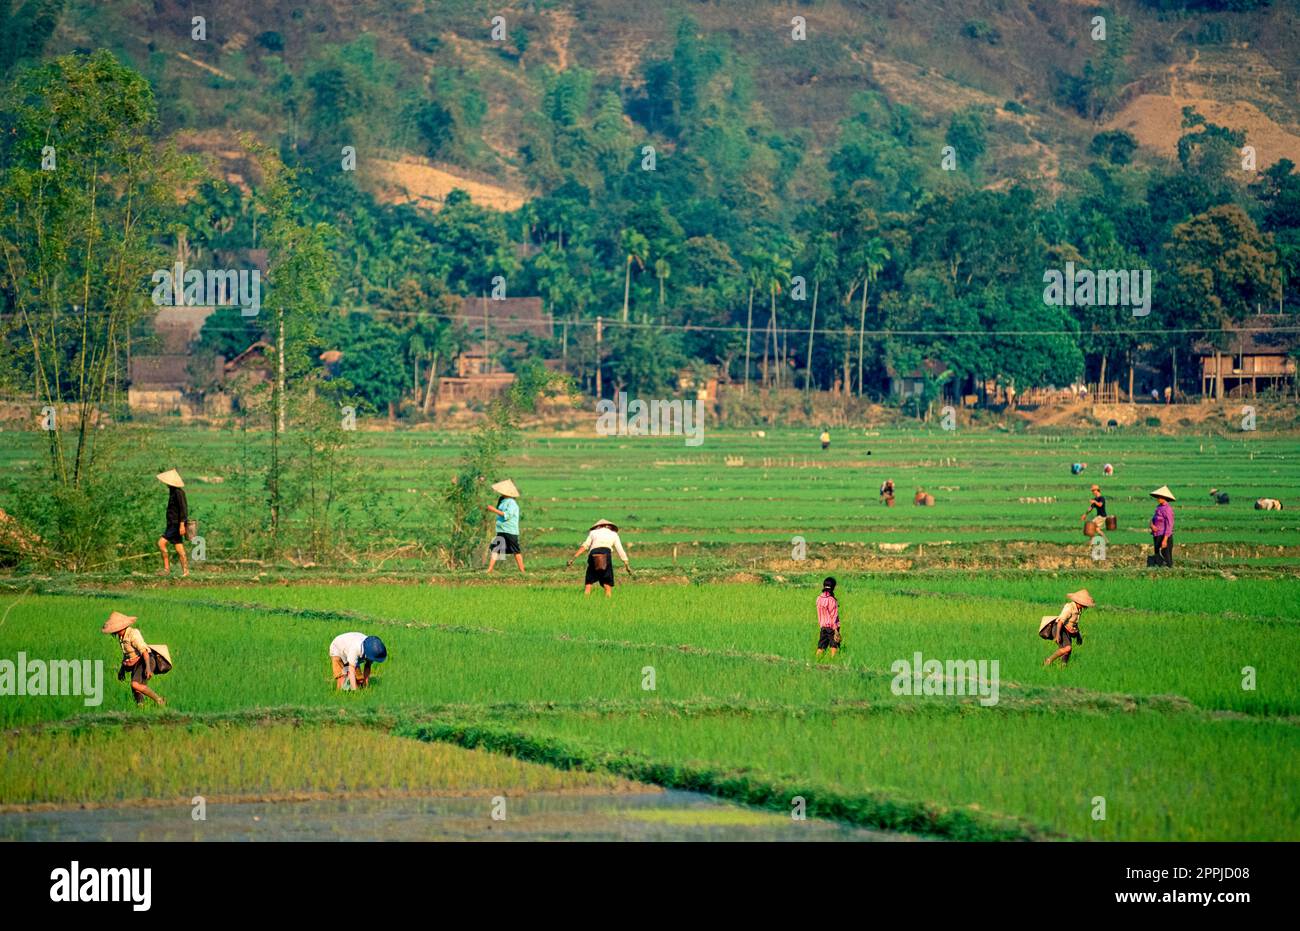 Diapositiva scansionata di una fotografia storica a colori di persone non riconoscibili che indossano cappelli di riso che raccolgono riso in un campo di riso in Vietnam Foto Stock